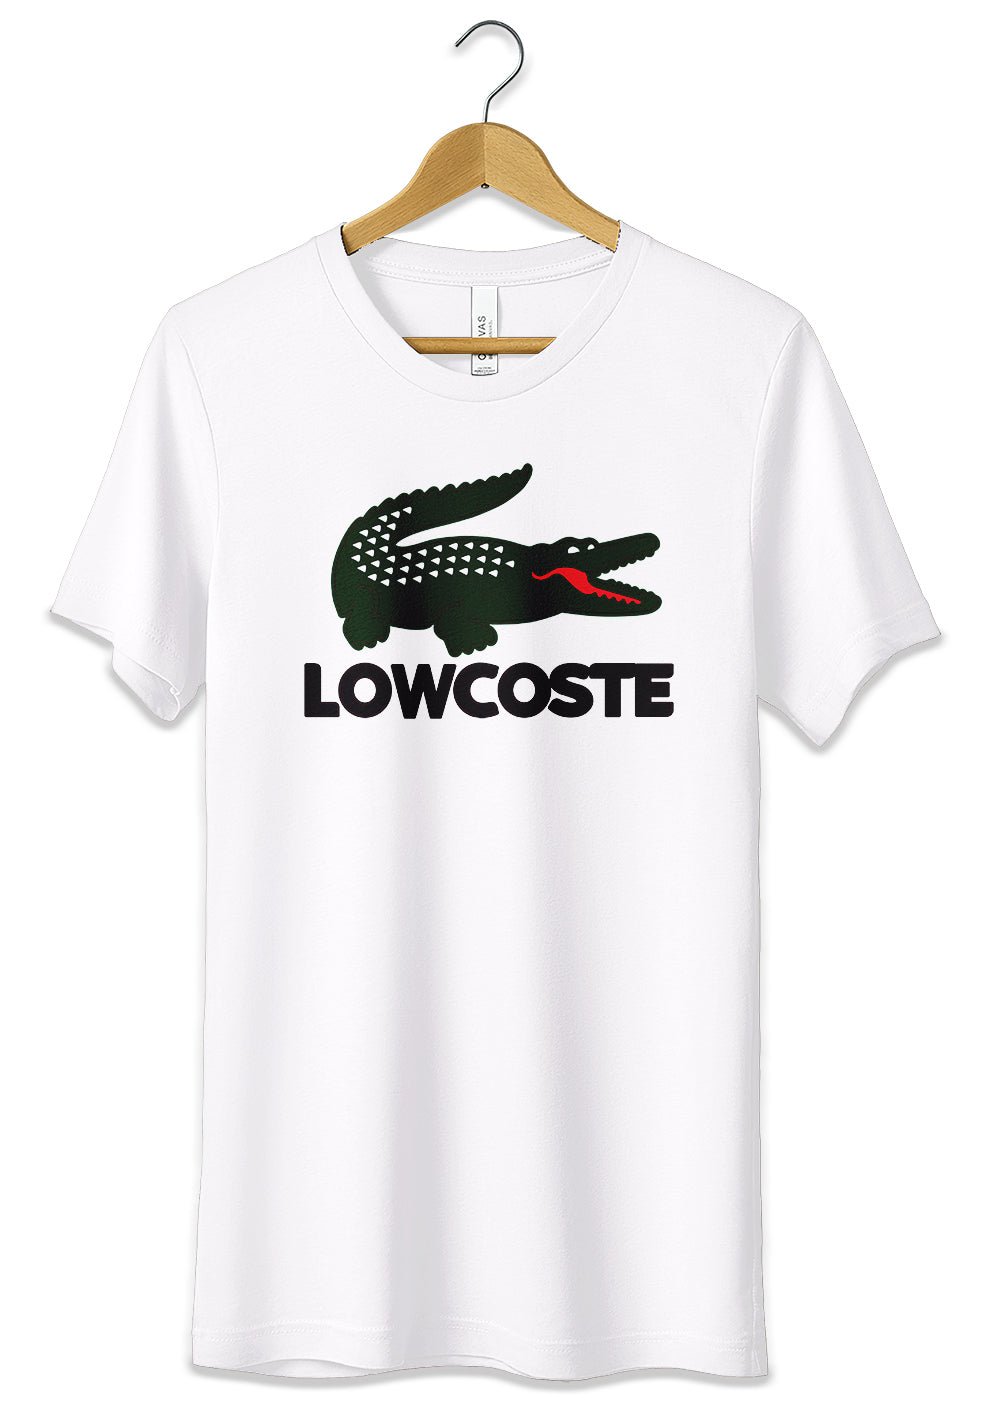 T-Shirt Funny Lowcost Maglietta 100% Cotone Idea Regalo T-Shirt CmrDesignStore S Bianco 